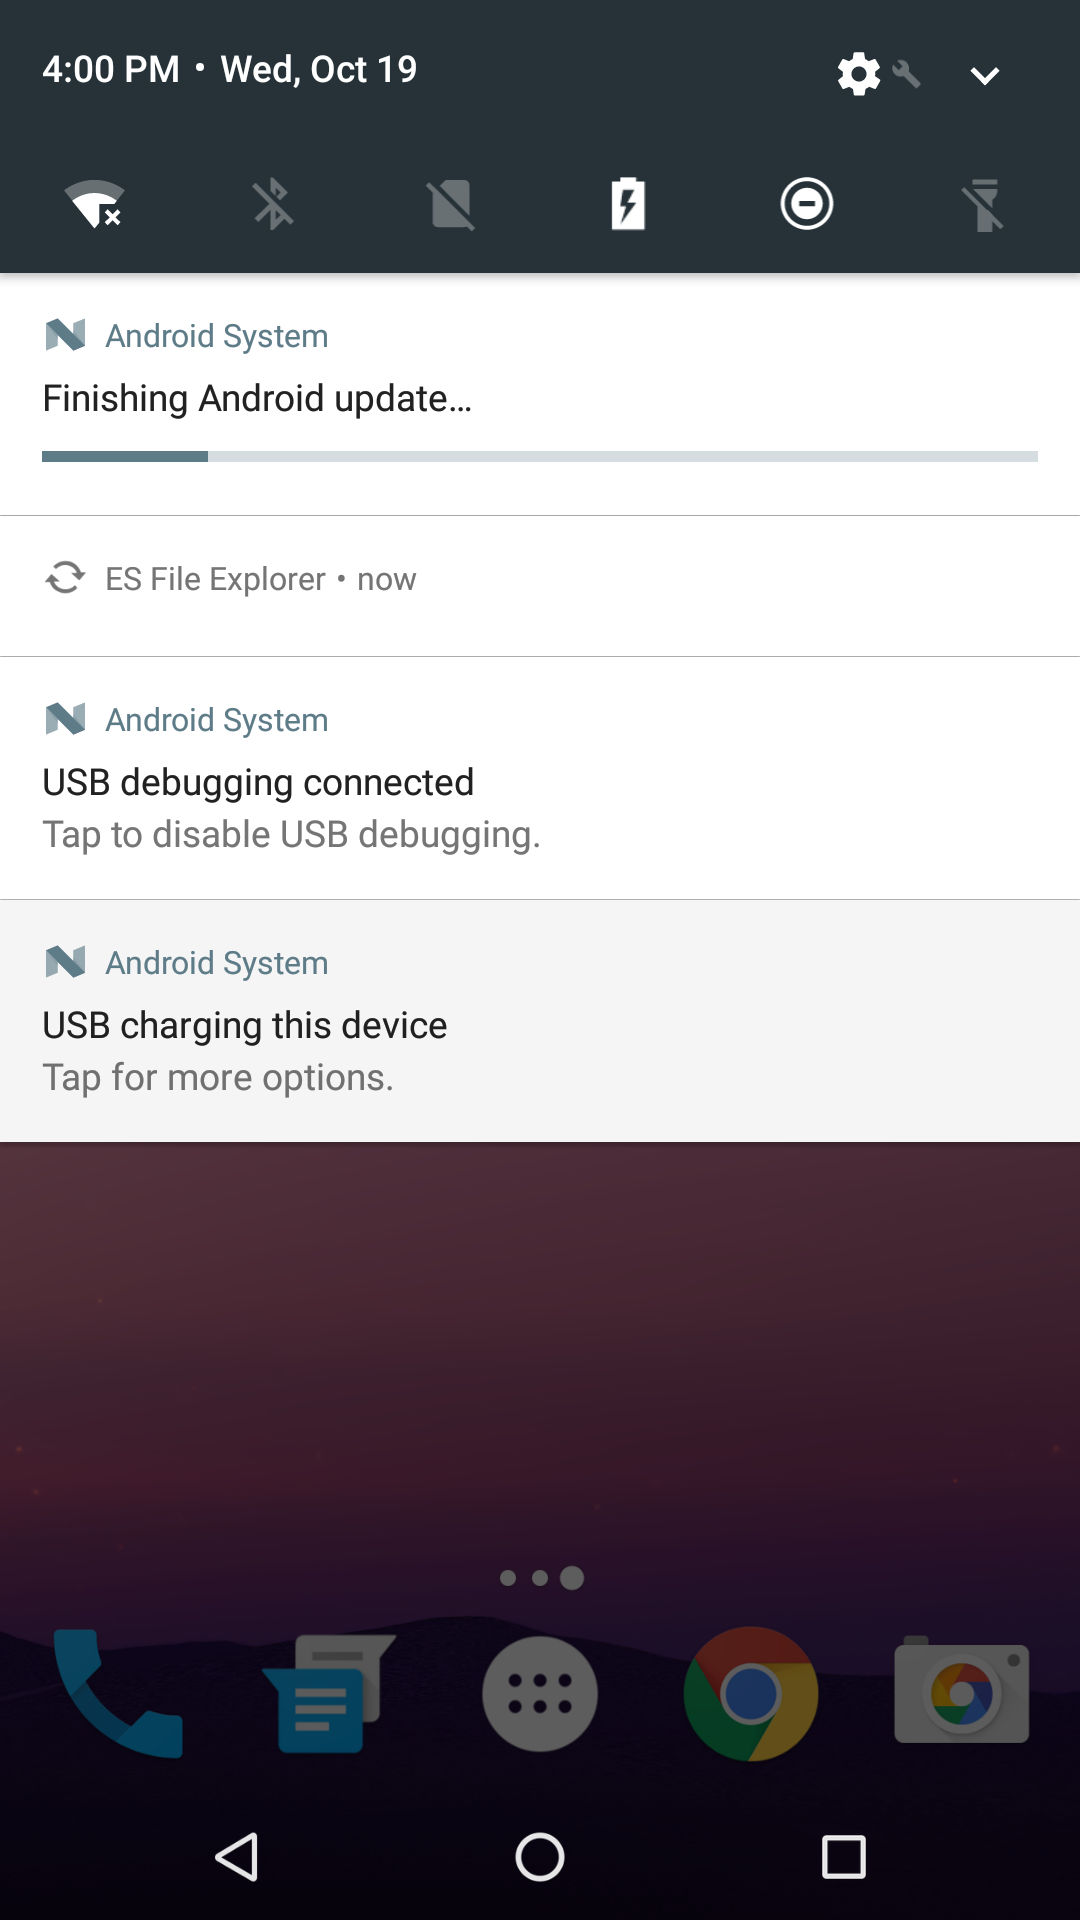 Android 7.0 Nougat otimizando e atualizando o sistema e aplicativos